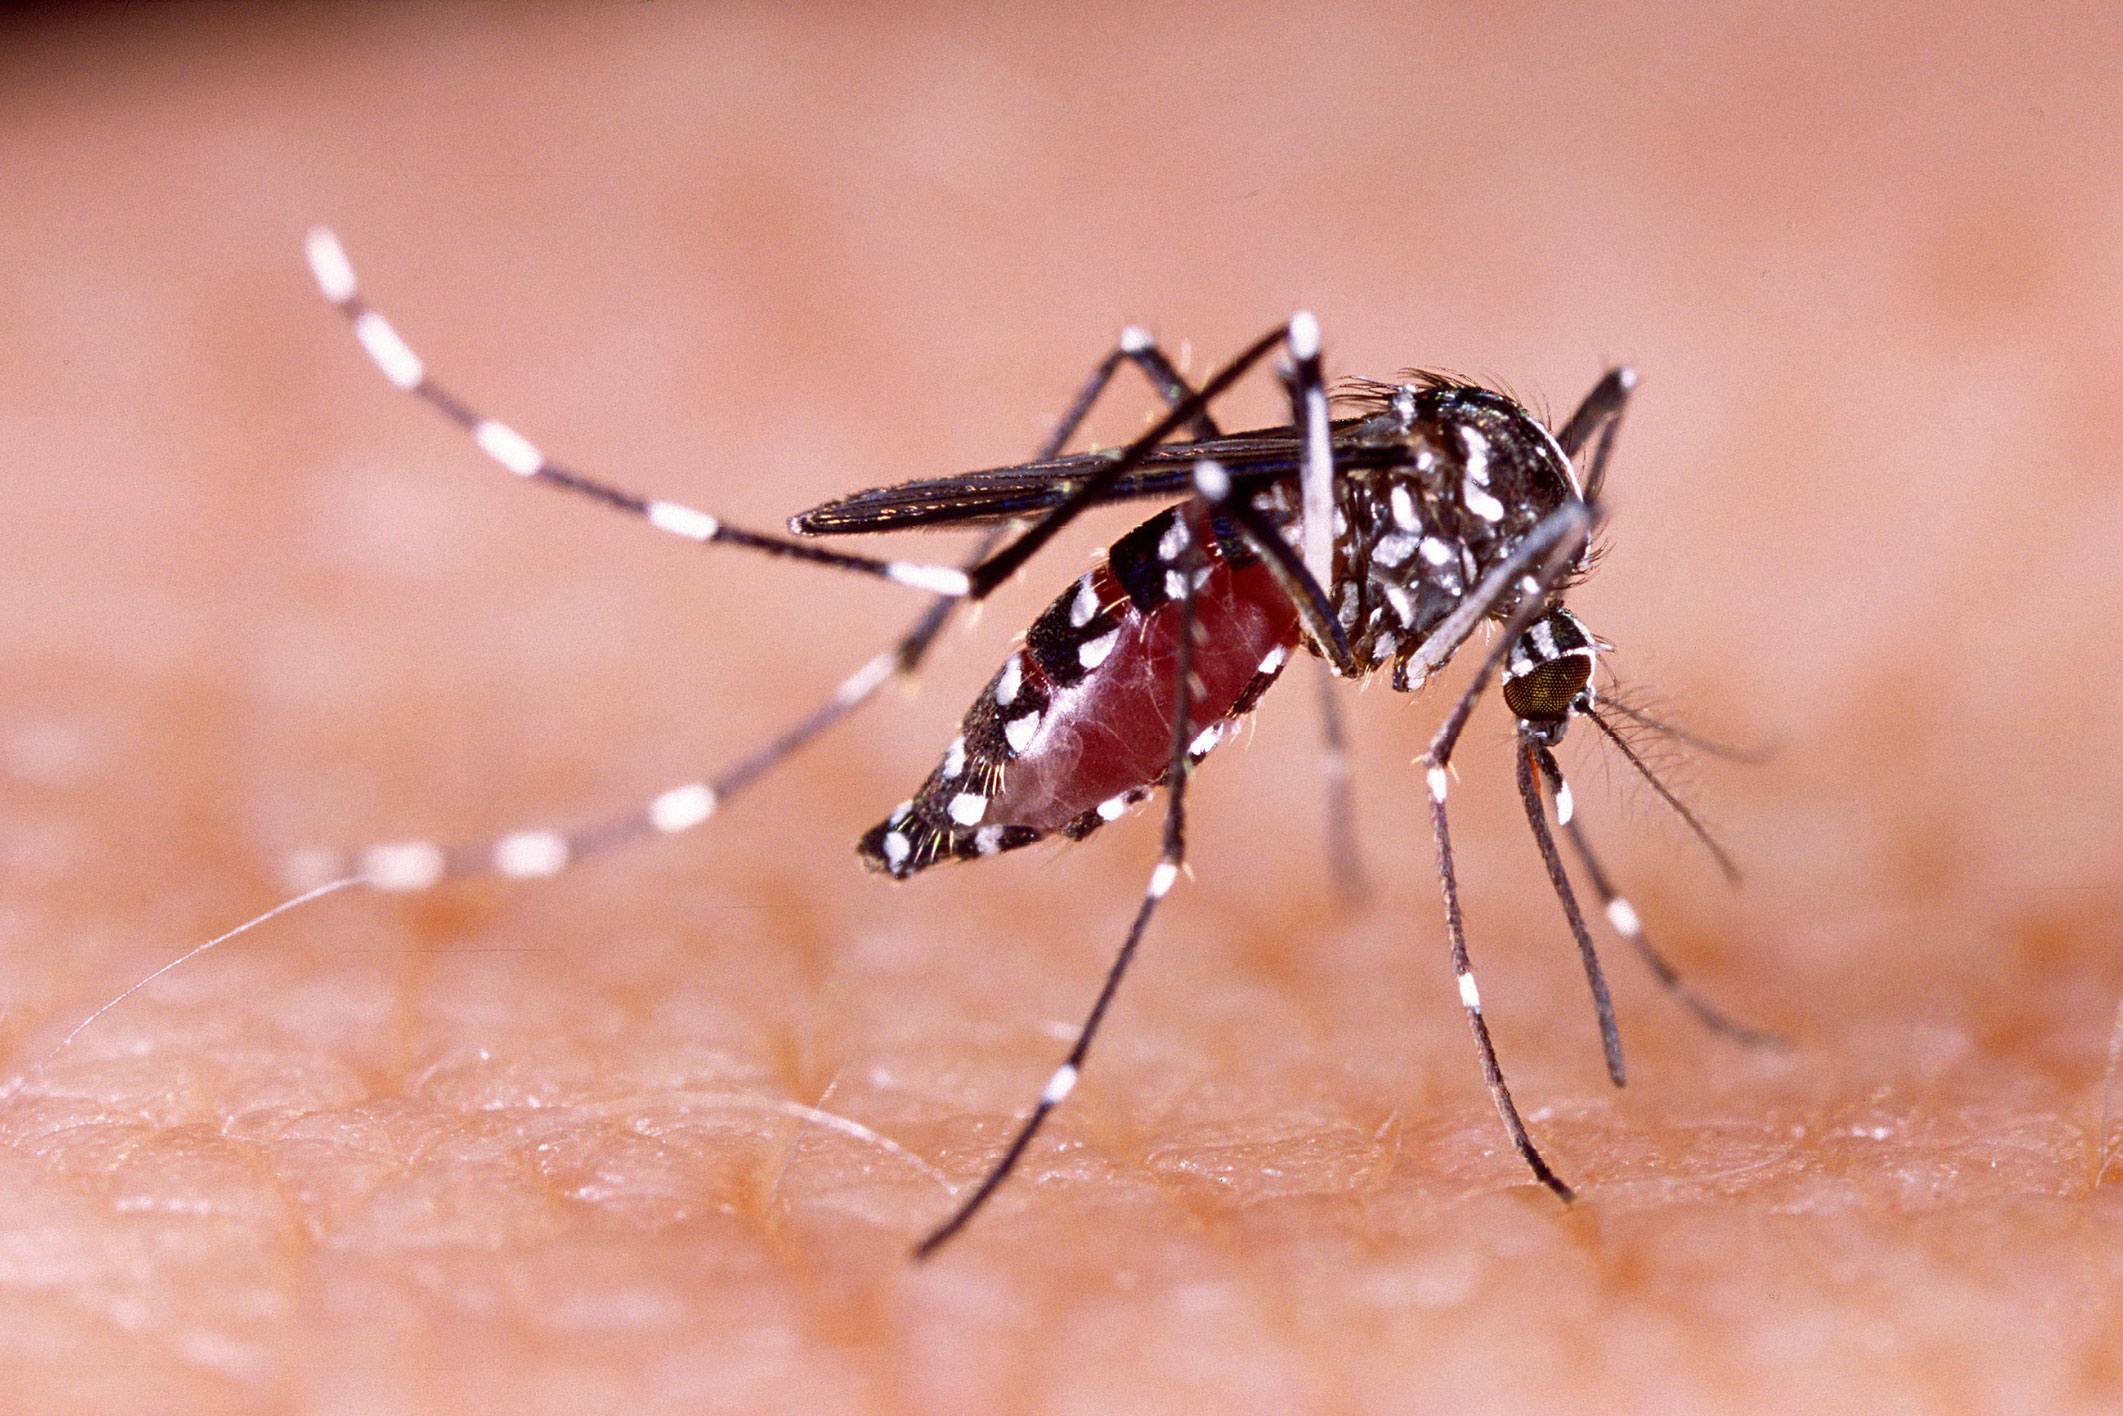 Le moustique tigre | Anses - Agence nationale de sécurité sanitaire de l'alimentation, de l'environnement et du travail